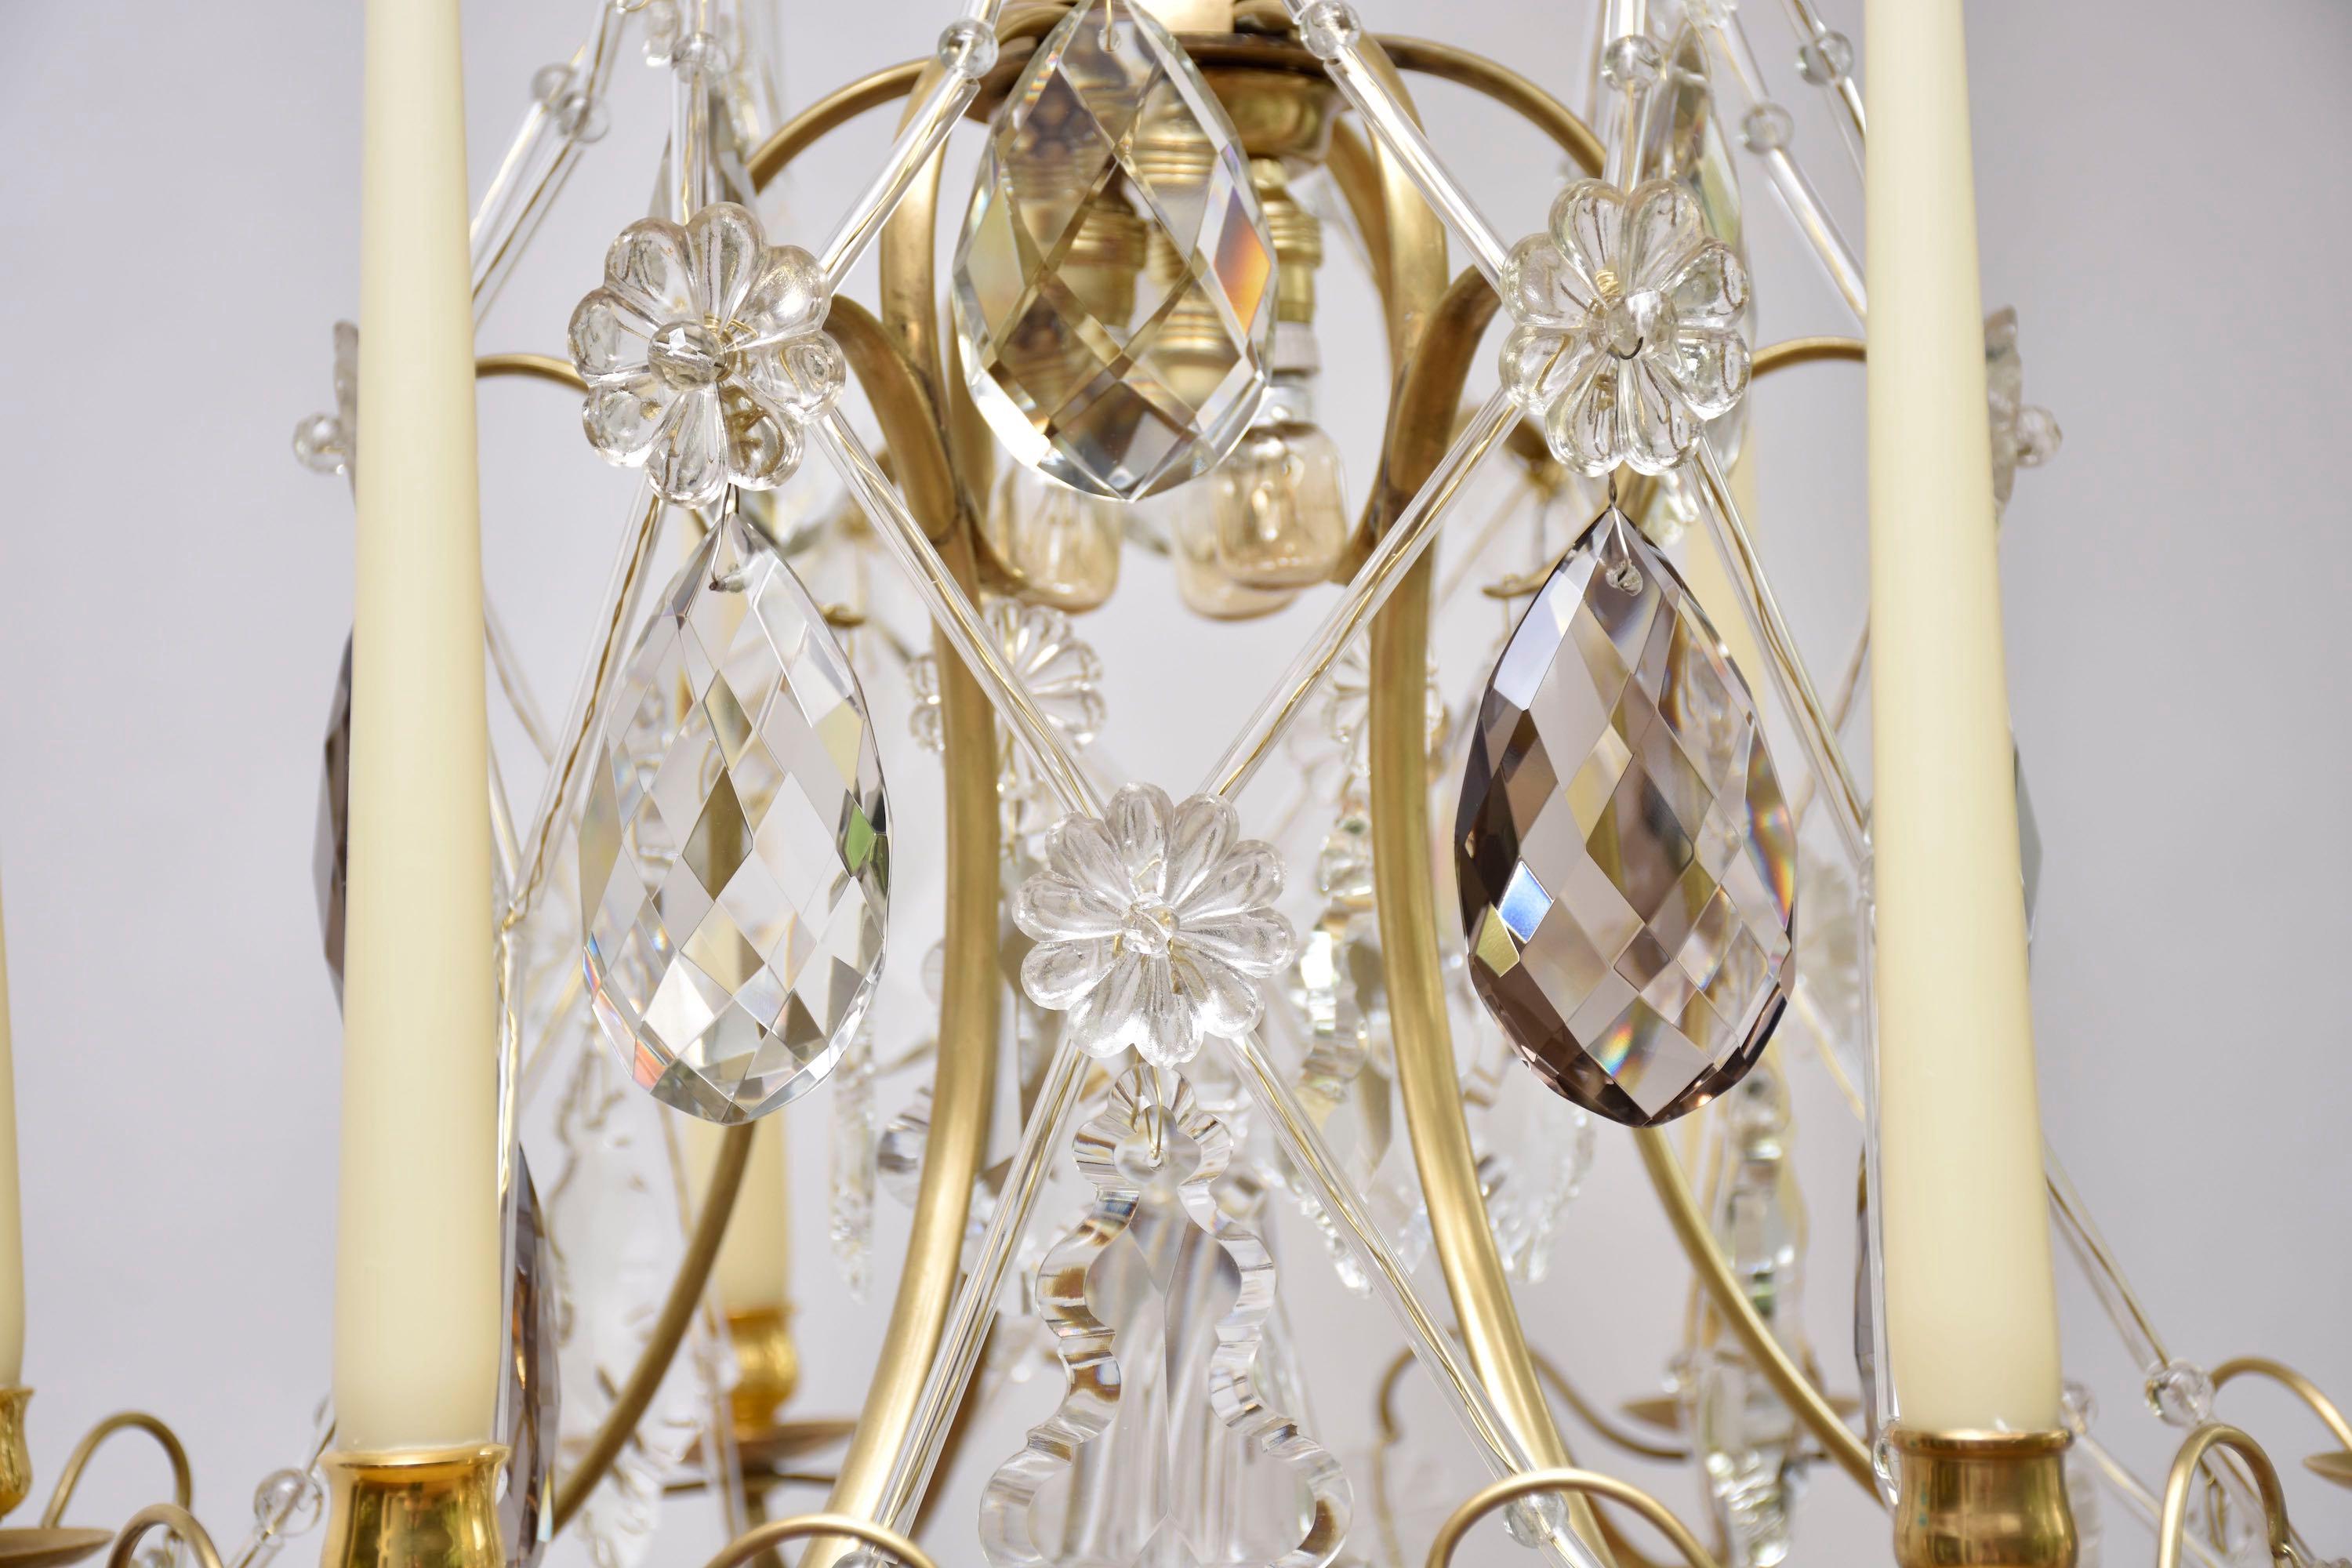 Un élégant lustre rococo nord-européen avec 3 petites lumières à l'intérieur et 6 chandeliers.
Décorée de plusieurs pendeloques, rosaces de fleurs et étoiles en cristal de Bohême clair et de couleur douce. Très beaux et décoratifs sont les étroits